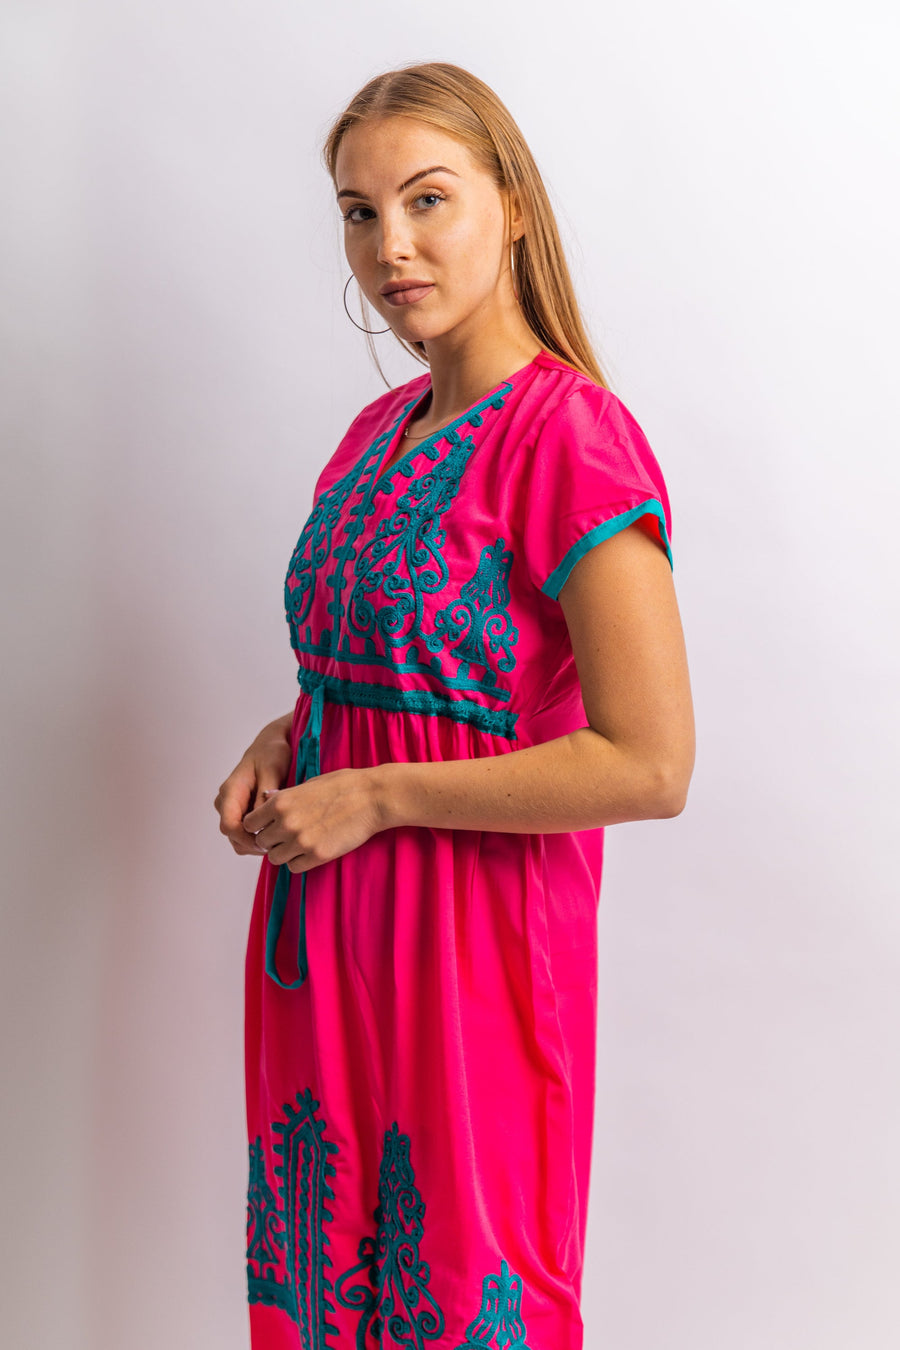 Pink Tunic embroidered kaftan dress, Boho embroidery tunic dress, Pink Summer tunic dress, beach tunic, resorts tunic, Gypsy dress